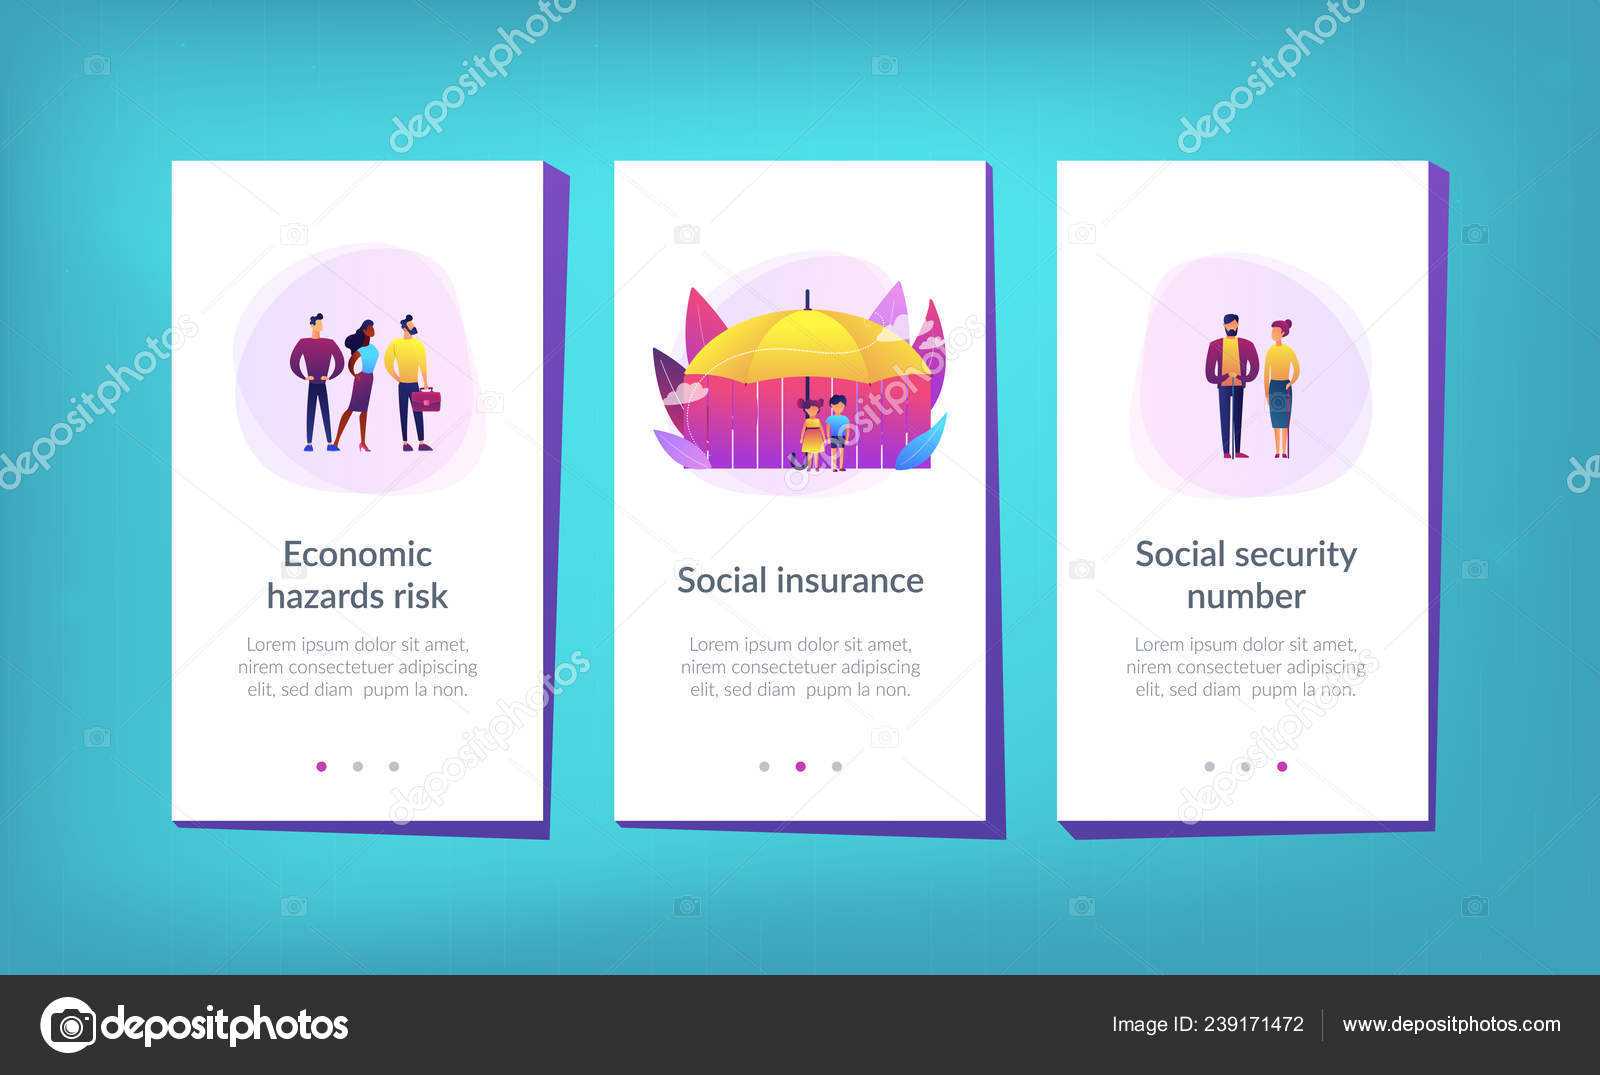 Blank Social Security Card Template | Social Insurance App Inside Blank Social Security Card Template